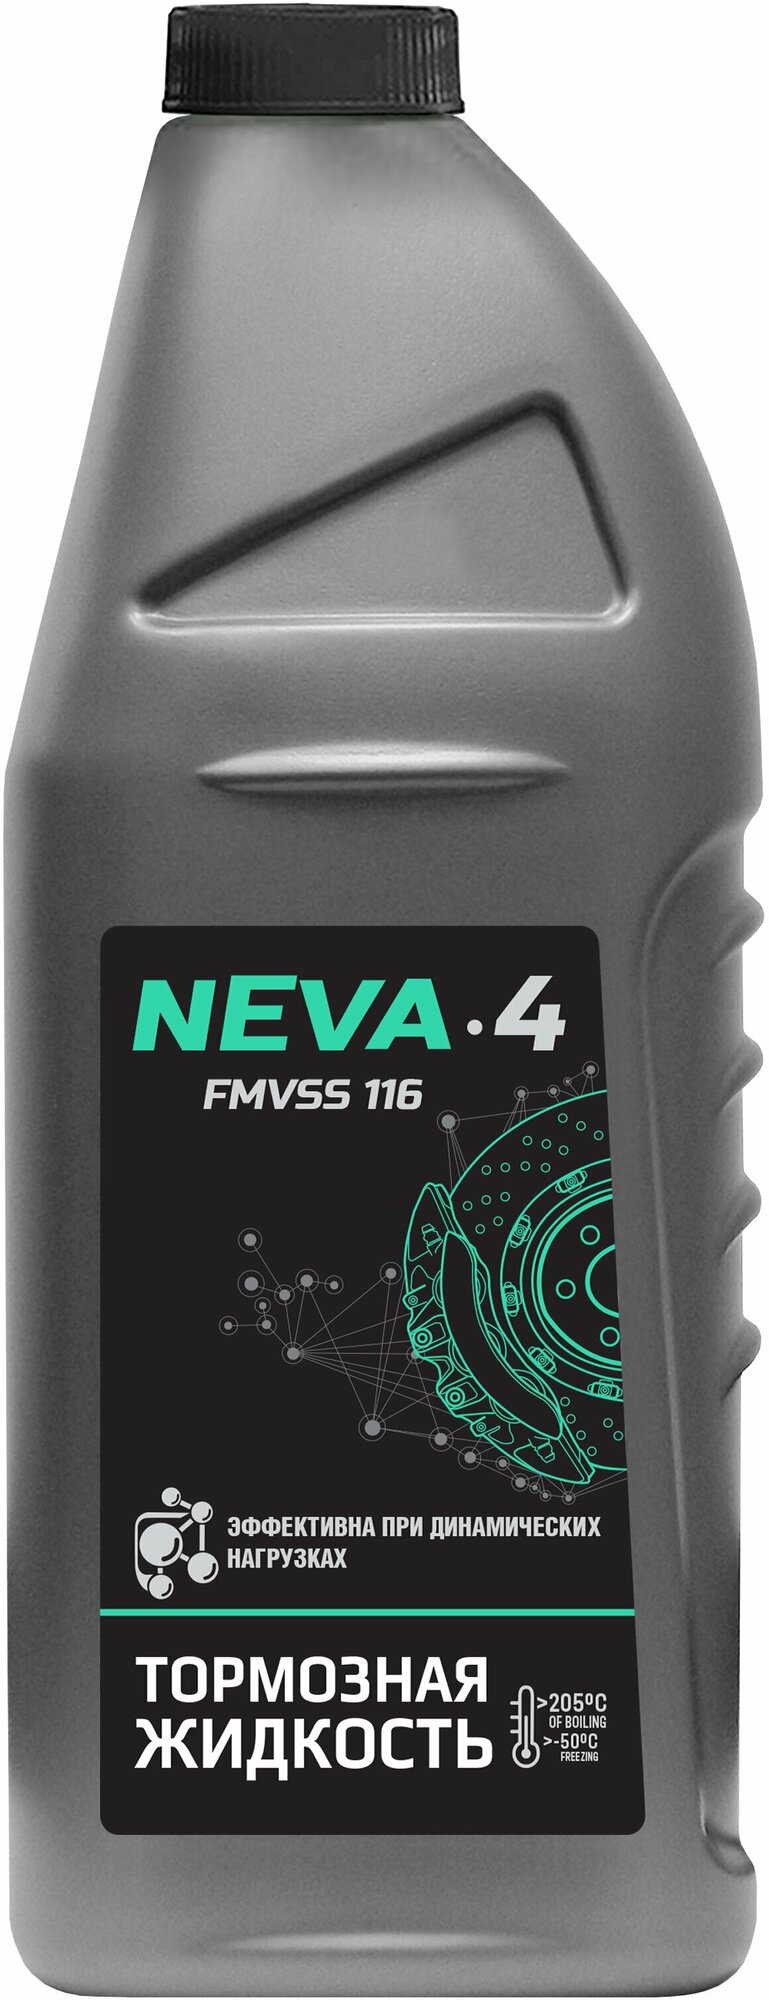 Тормозная жидкость Нева-4, 910 г